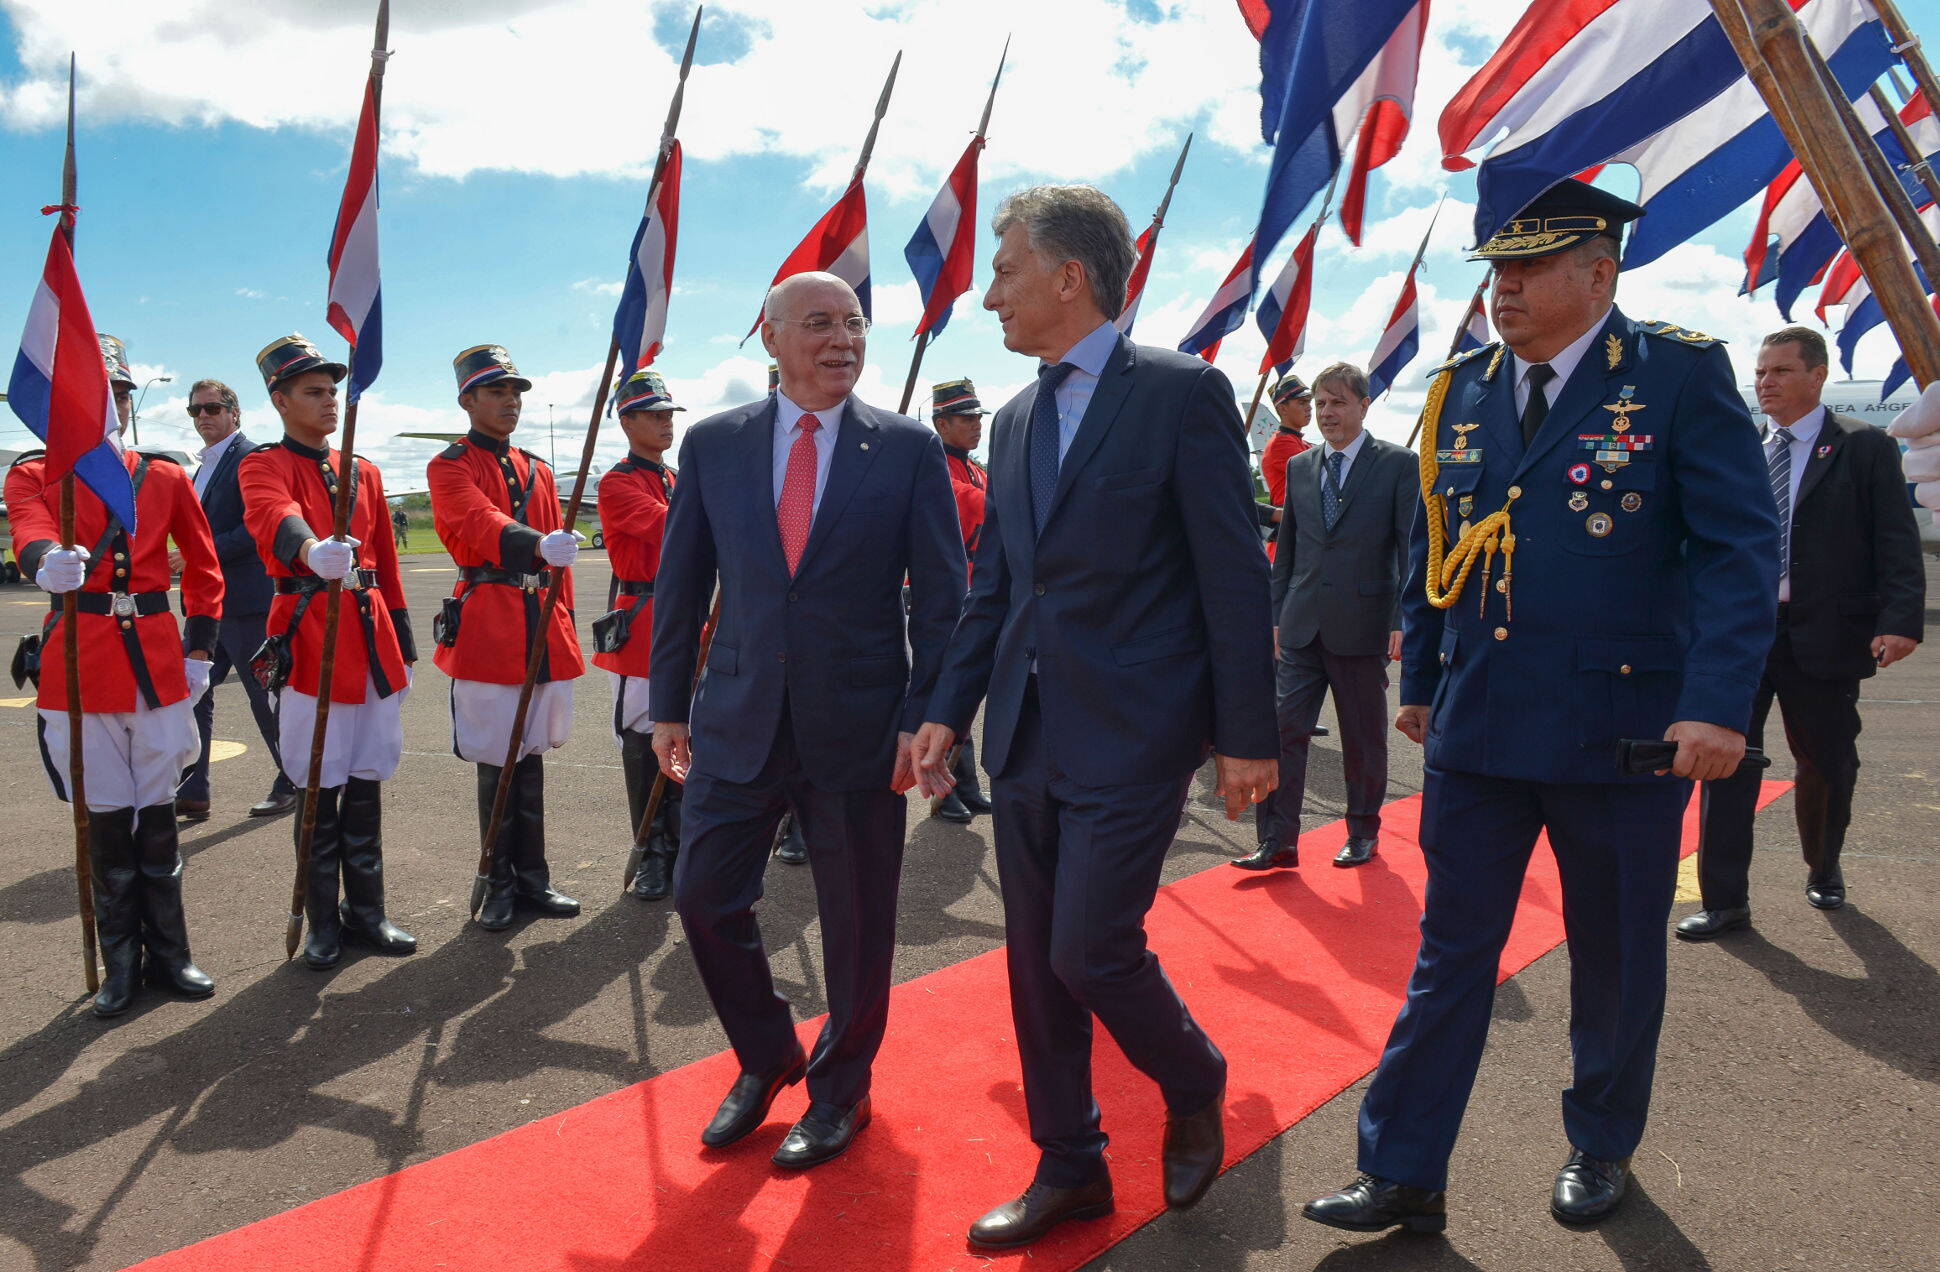 Los presidentes Macri y Cartes firmaron un acuerdo por Yacyretá